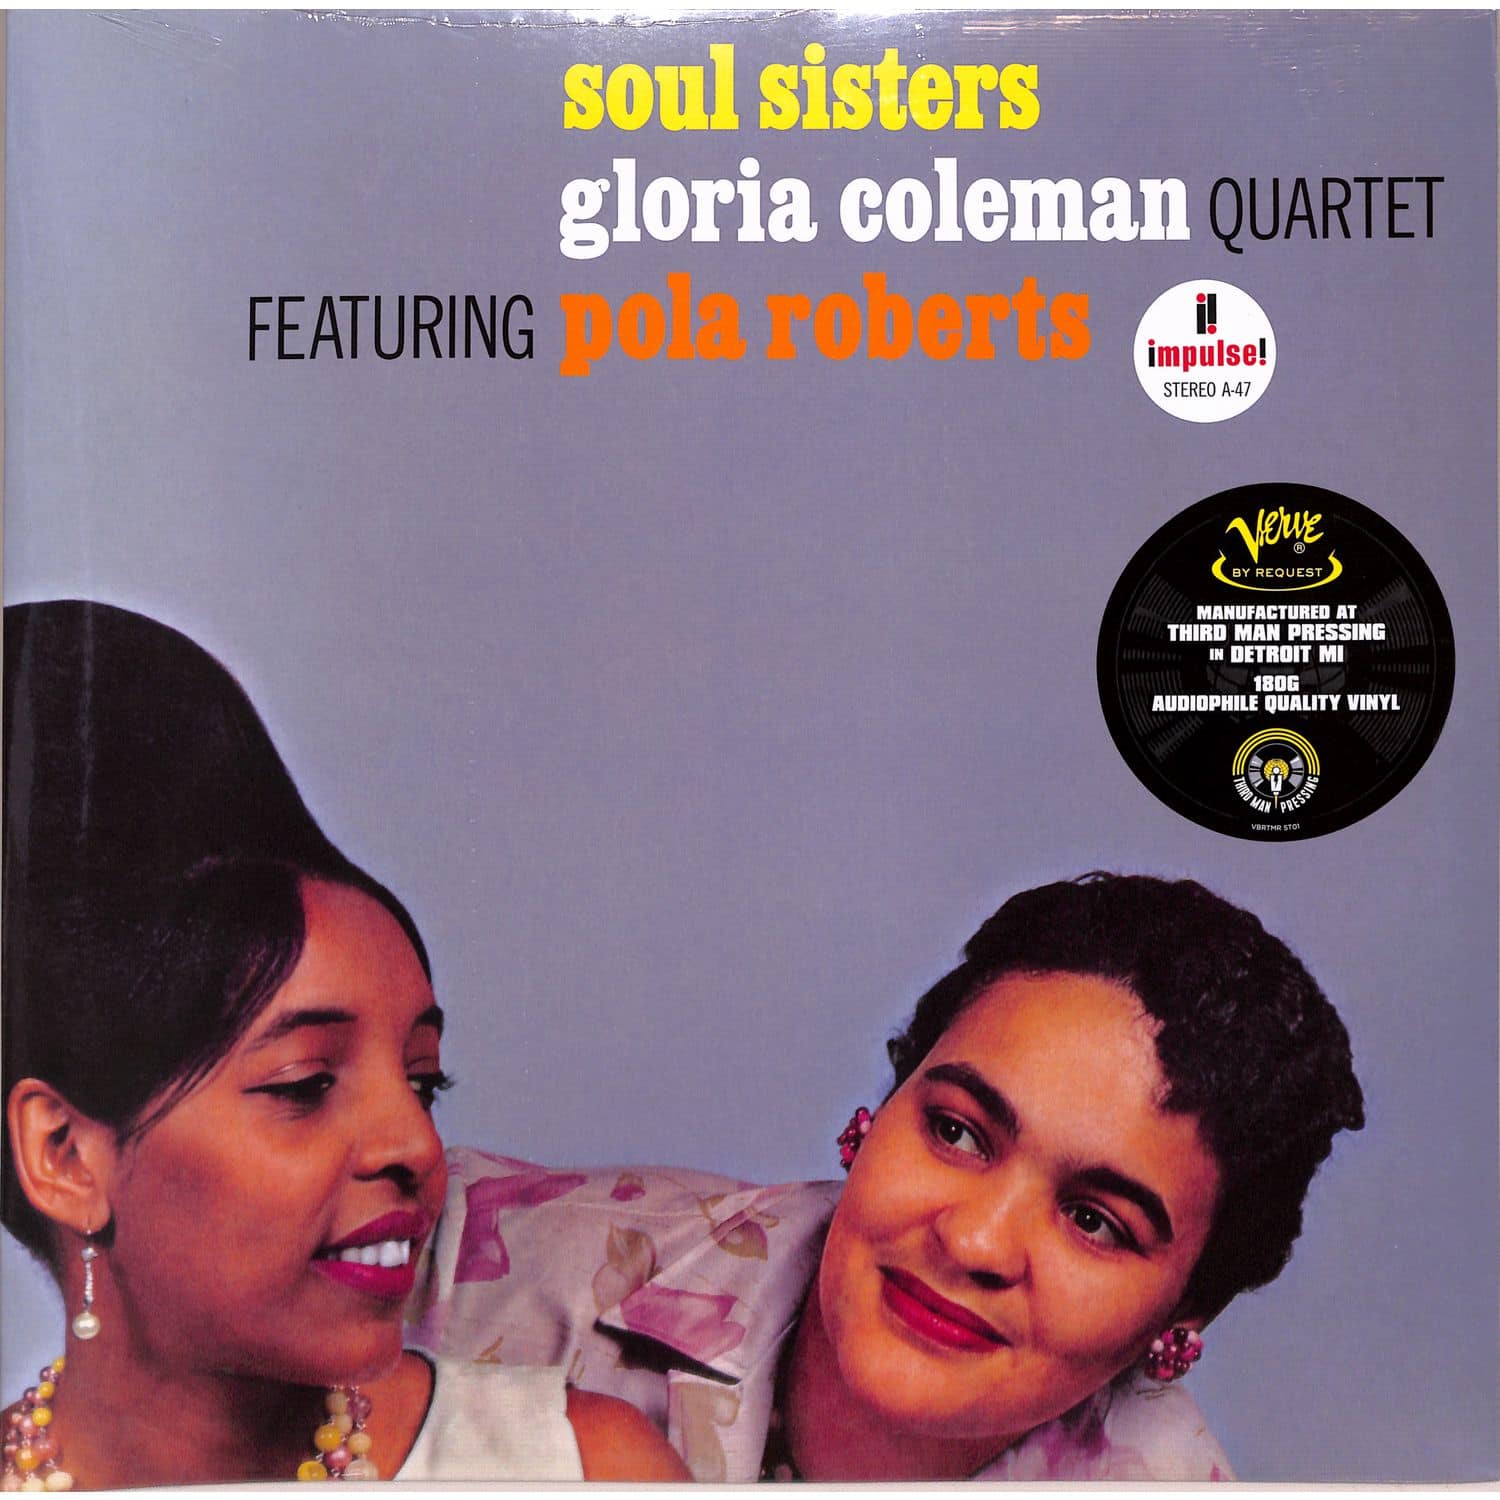 Gloria Coleman Quartet / Pola Roberts - SOUL SISTERS 